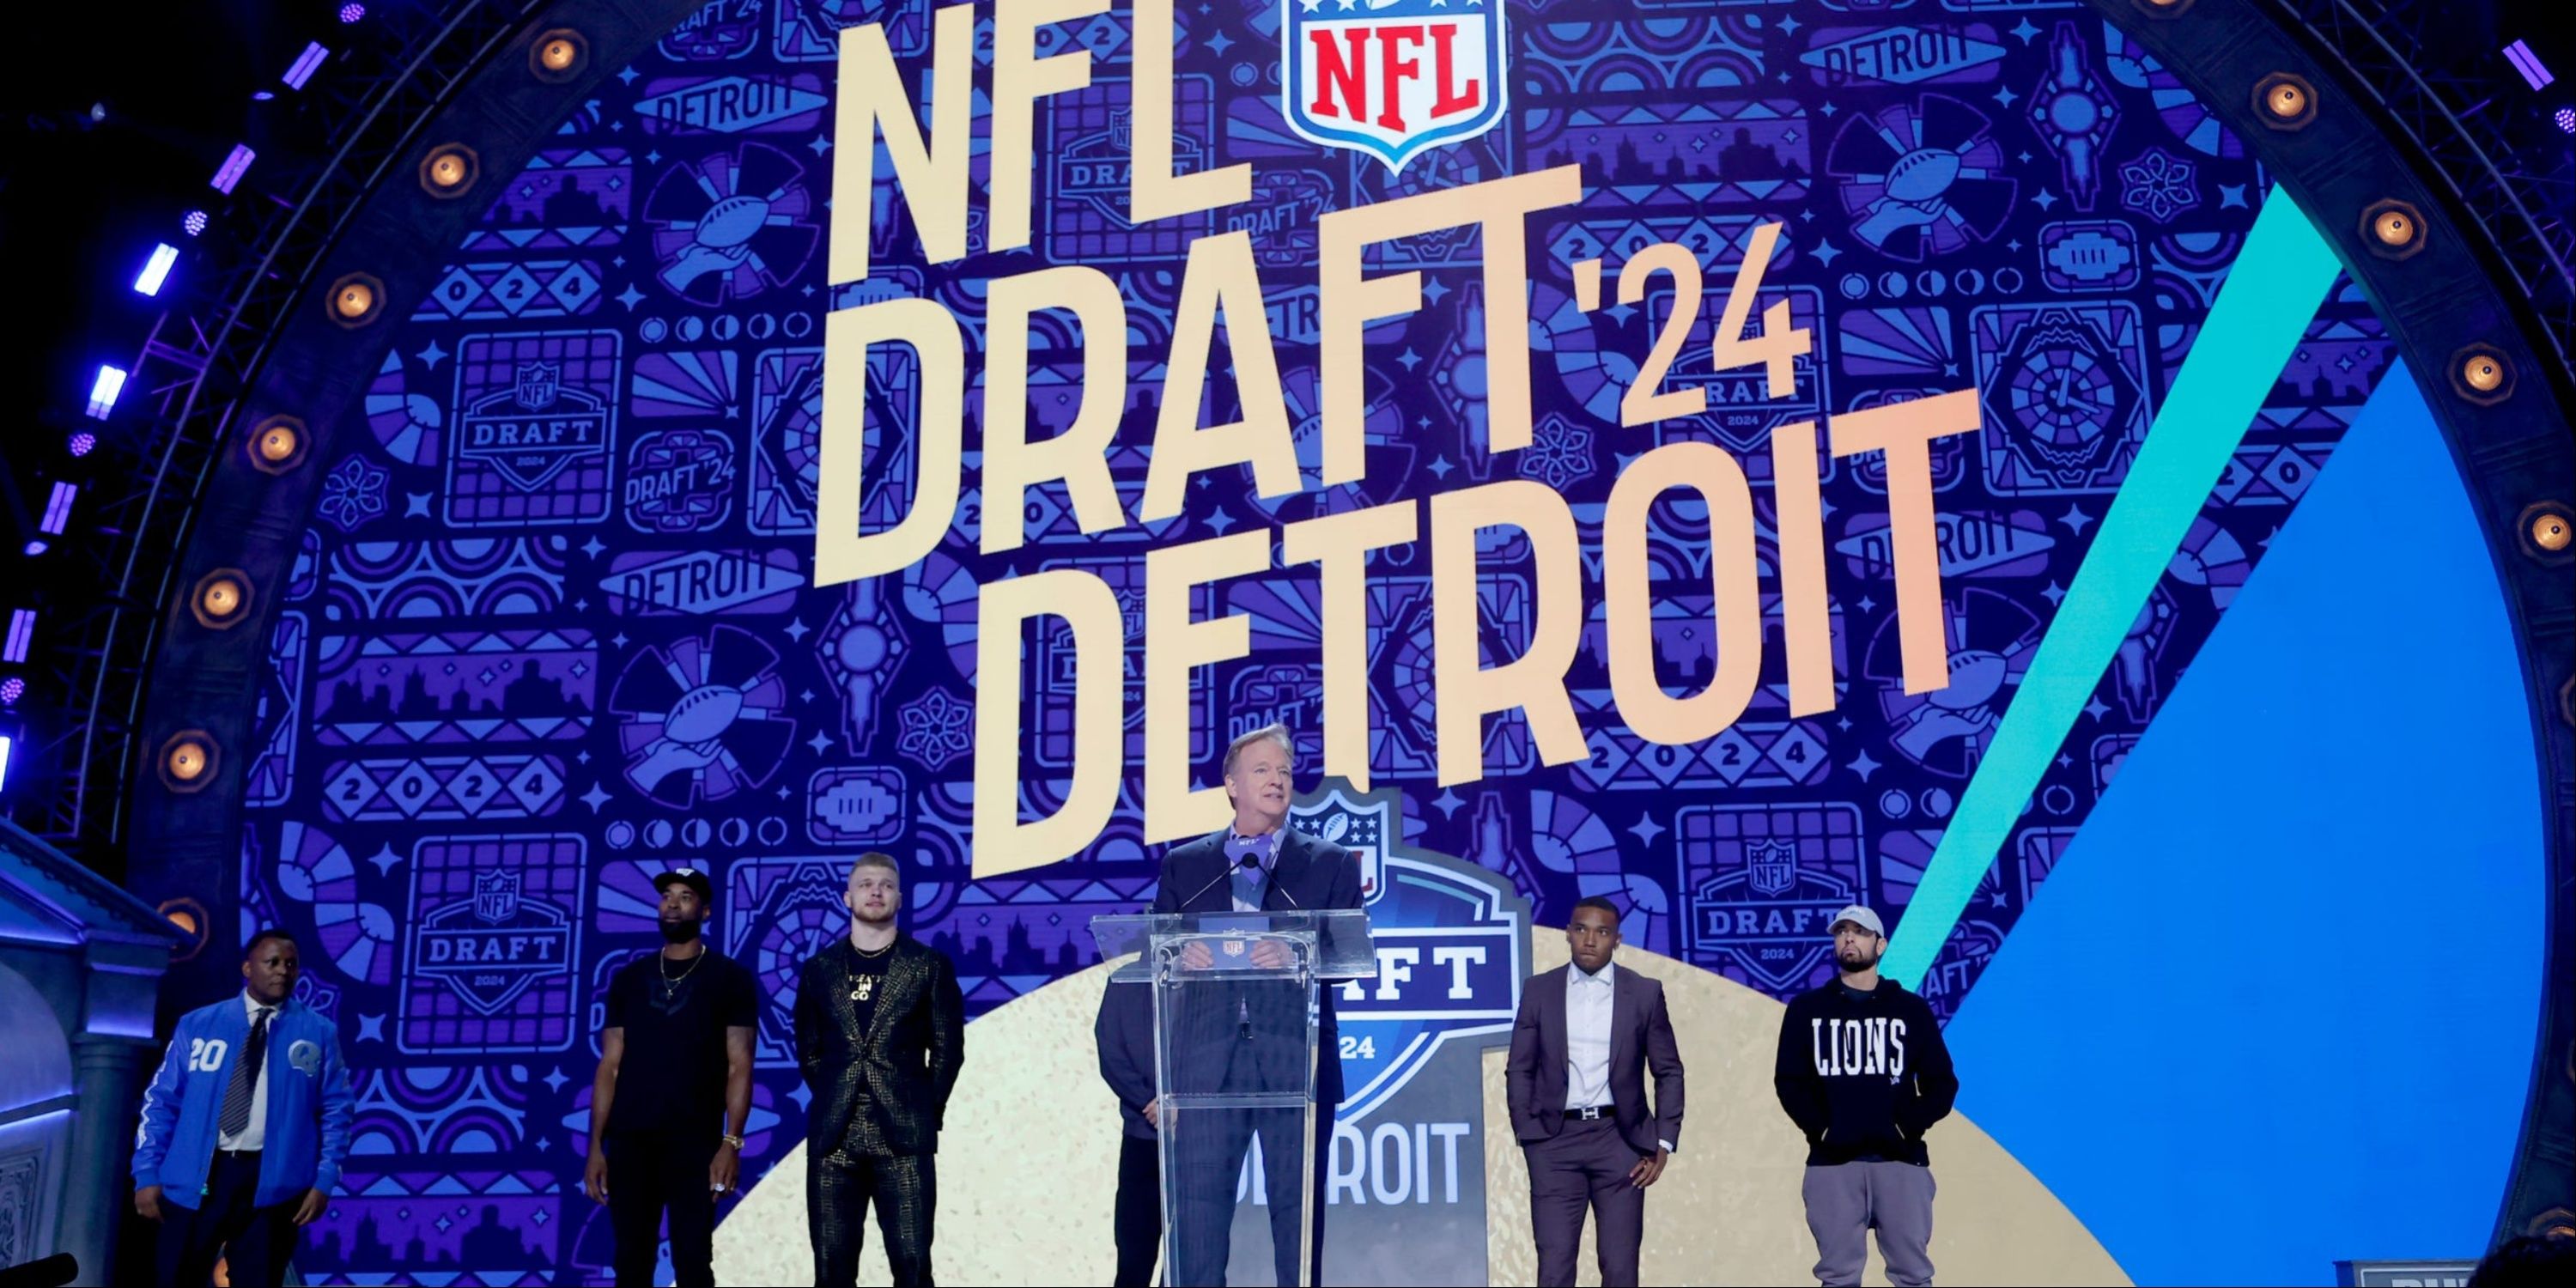 NFL Draft Detroit